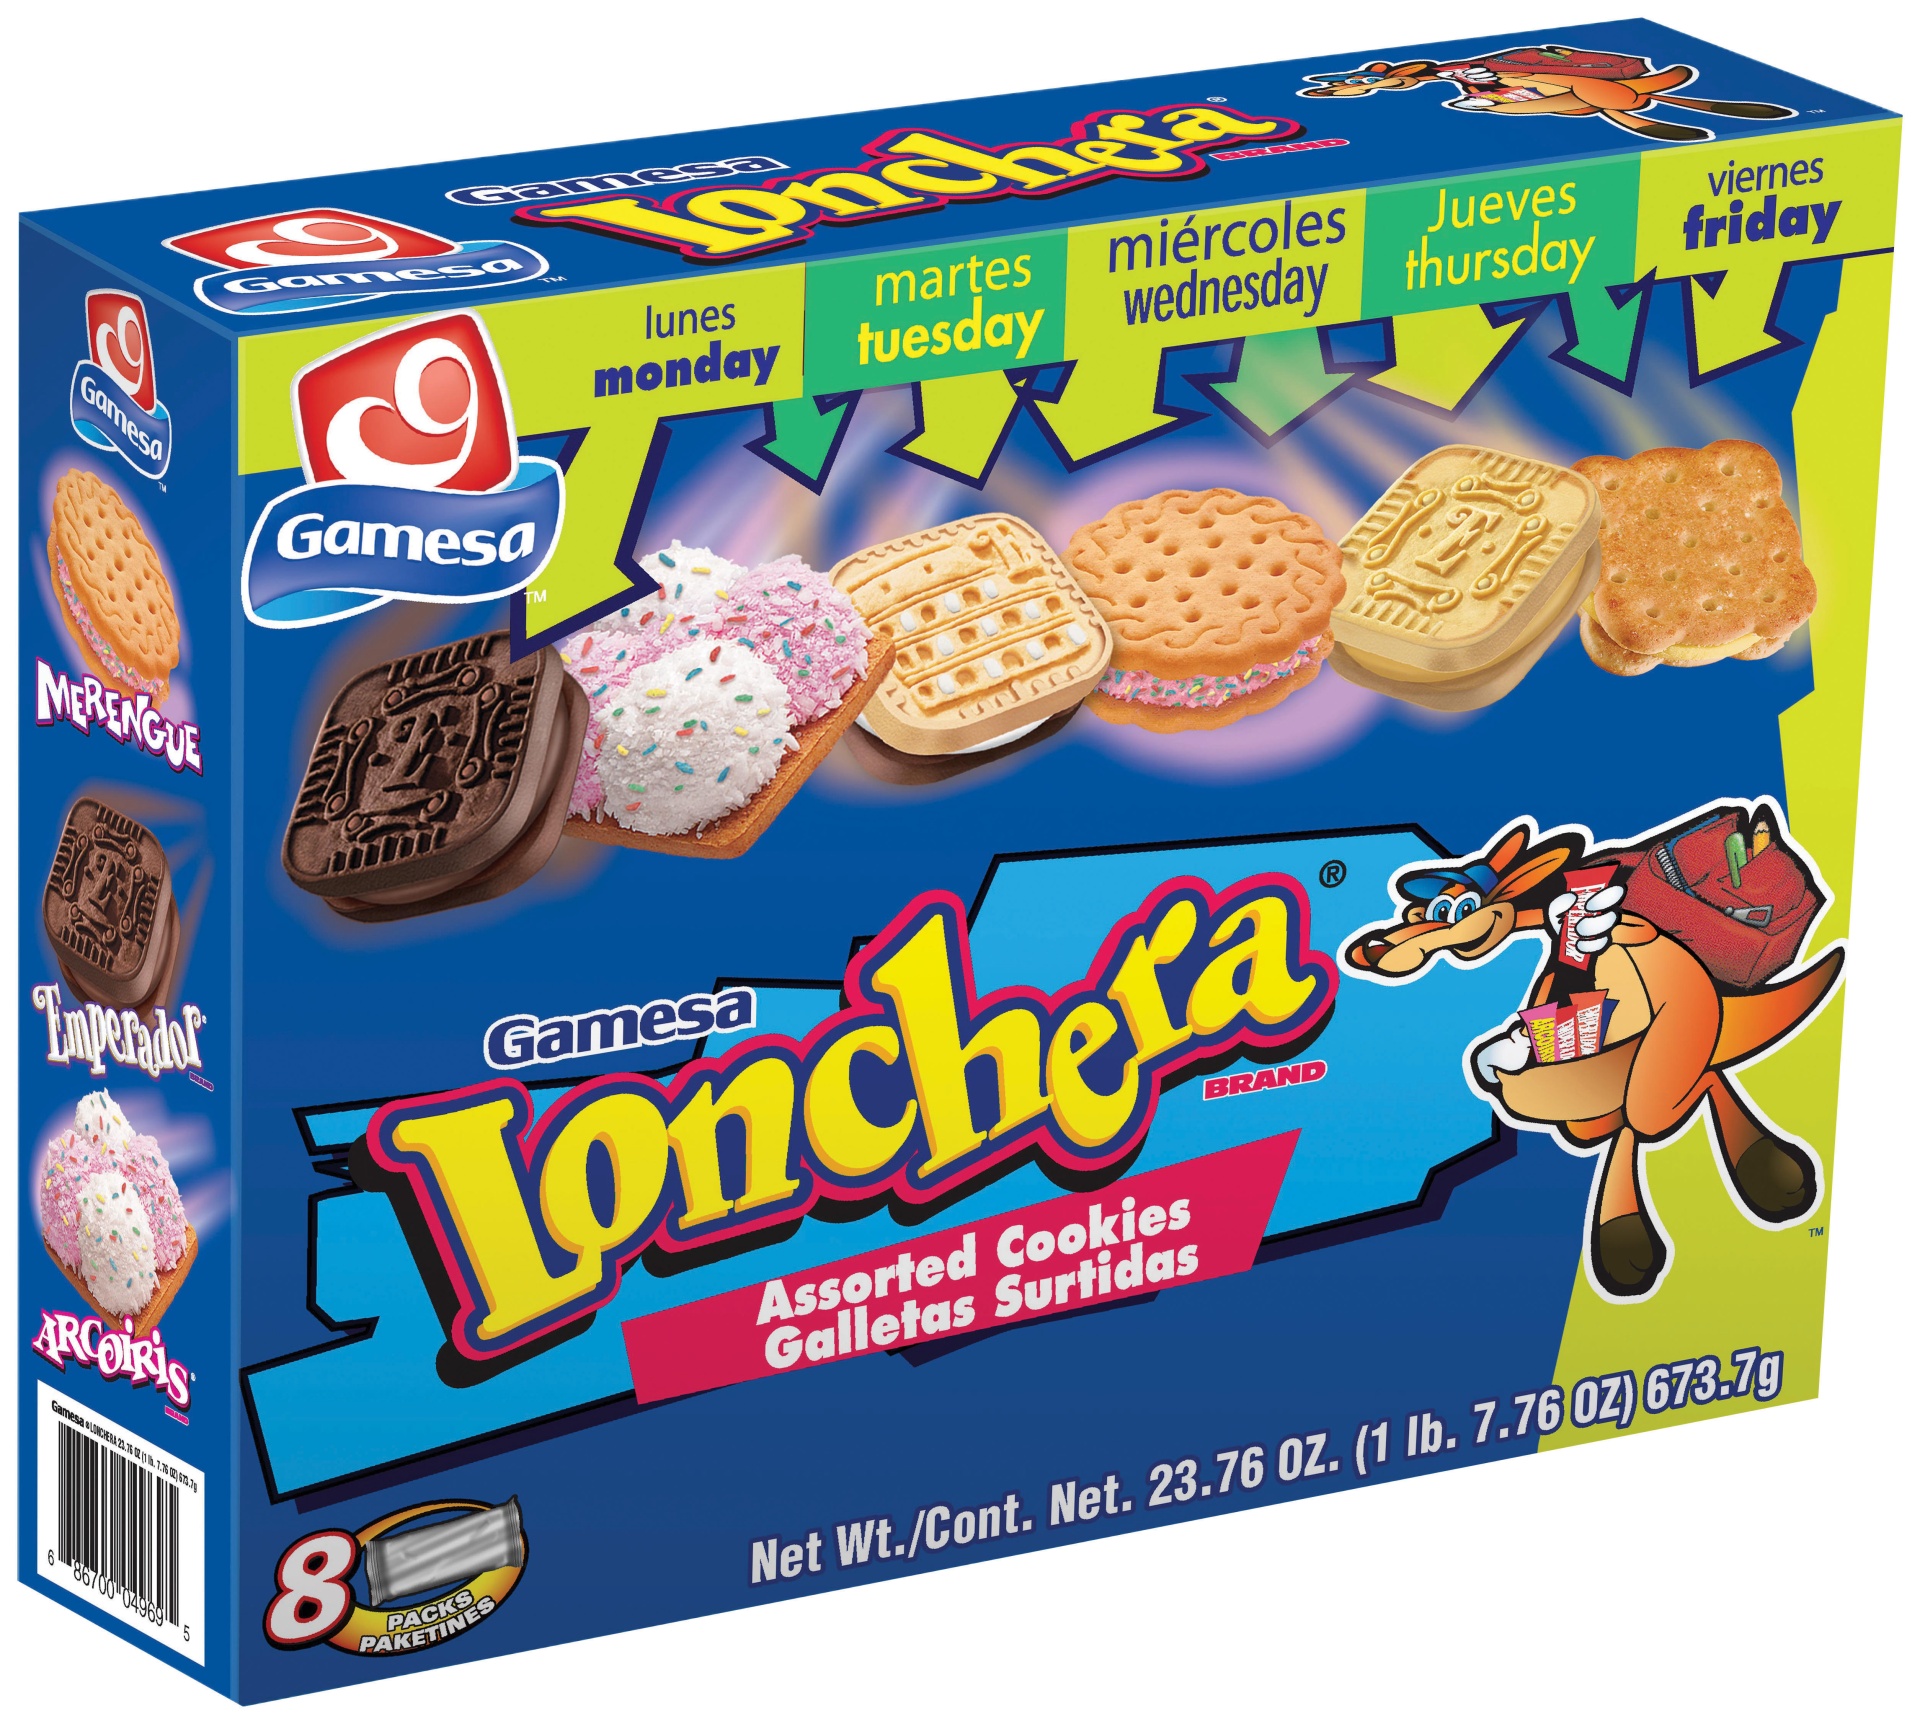 slide 1 of 1, Gamesa Lonchera Assorted Cookies, 14.3 oz